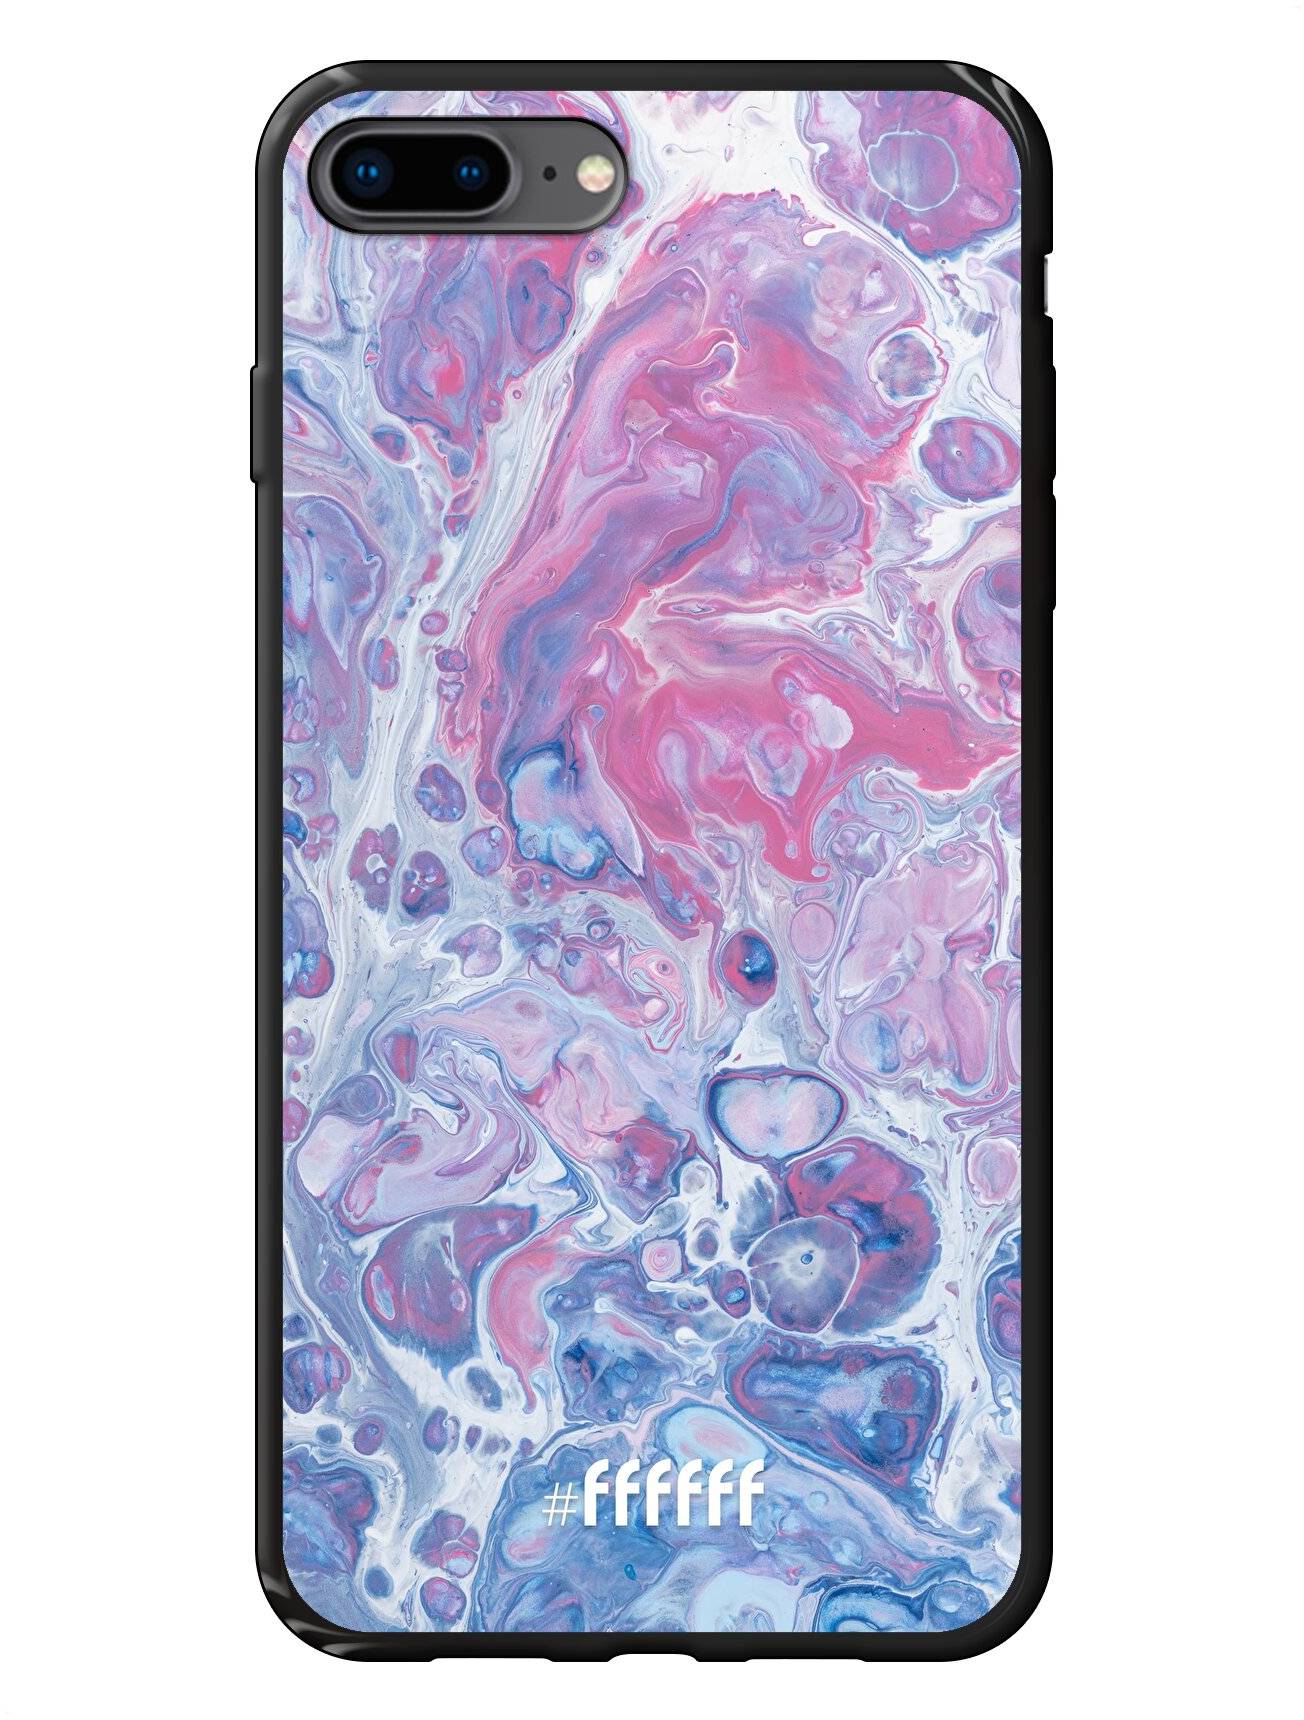 Liquid Amethyst iPhone 7 Plus